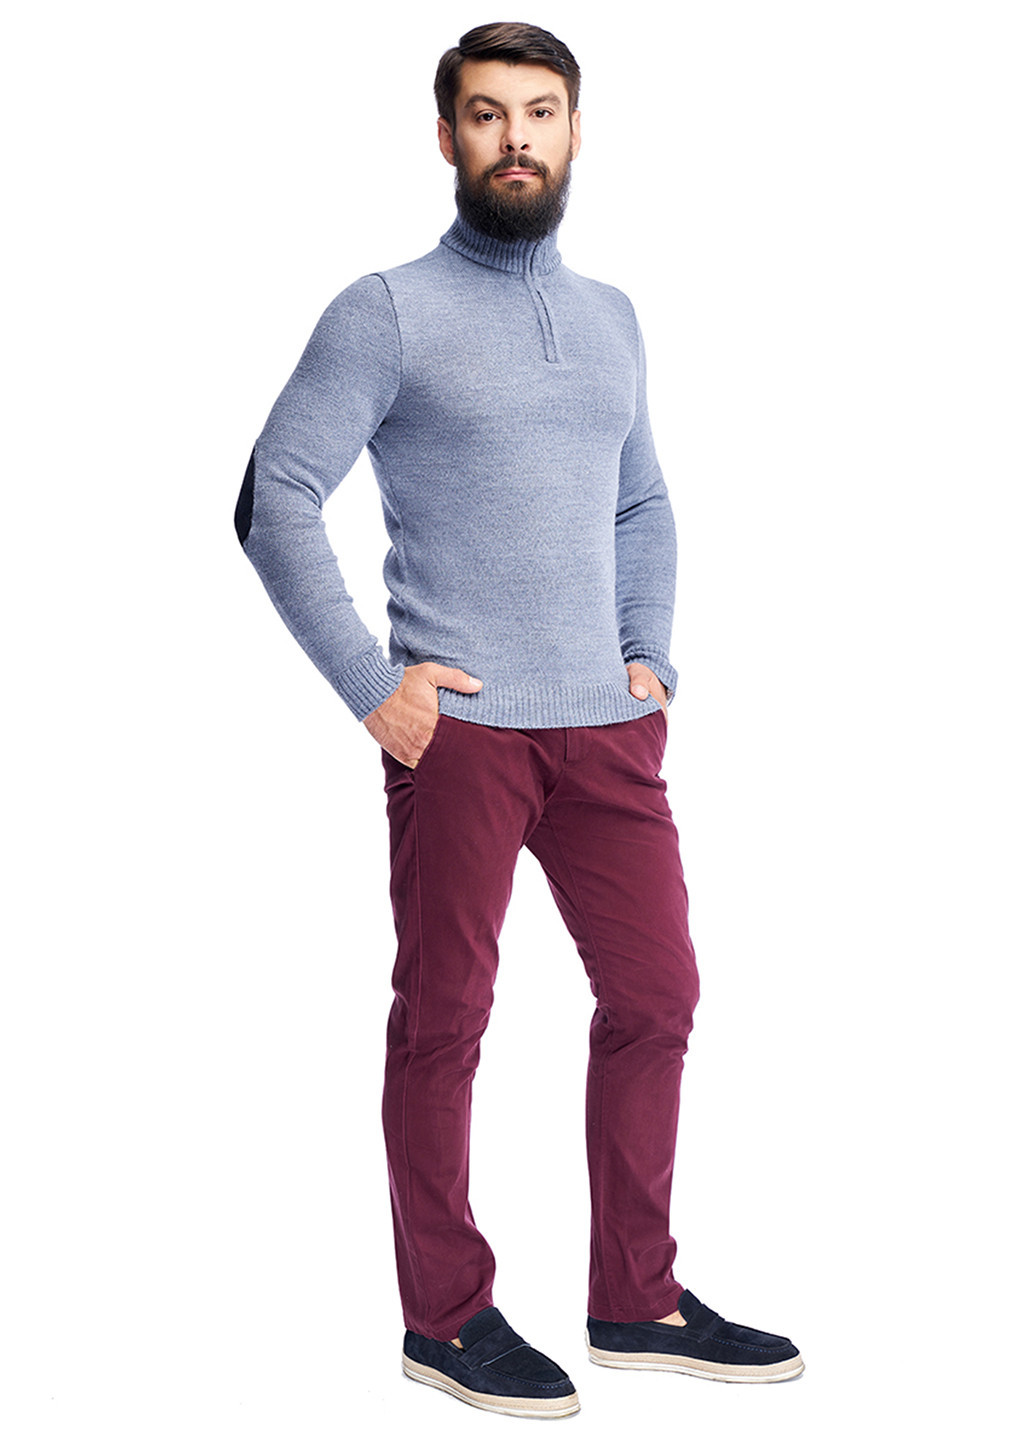 Сіро-голубий чоловічий еластичний светр з коміром на блискавці SVTR